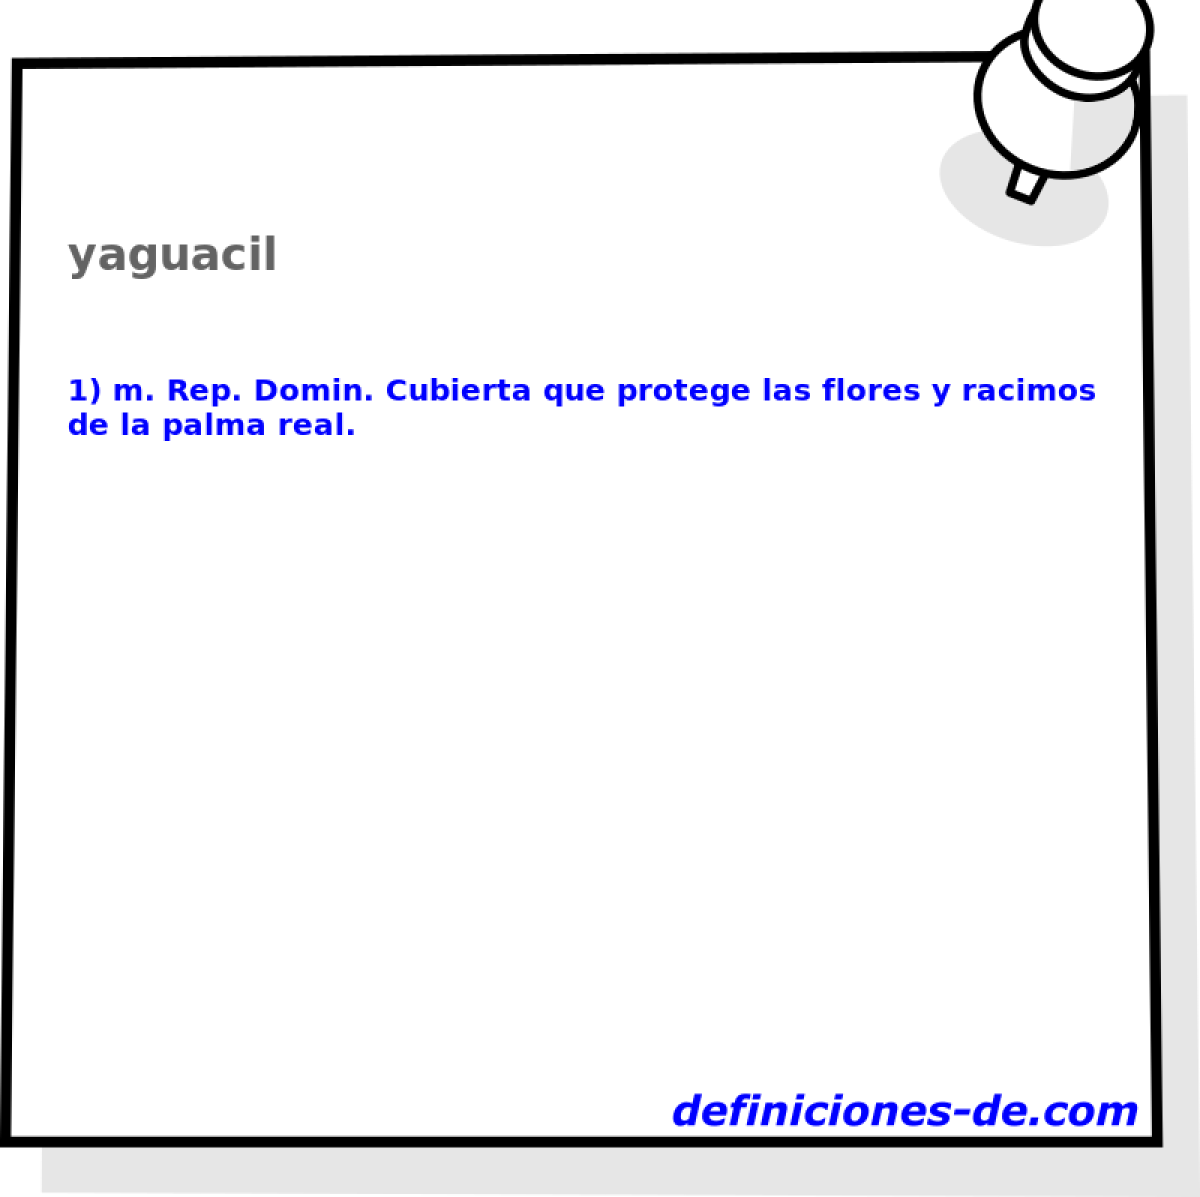 yaguacil 